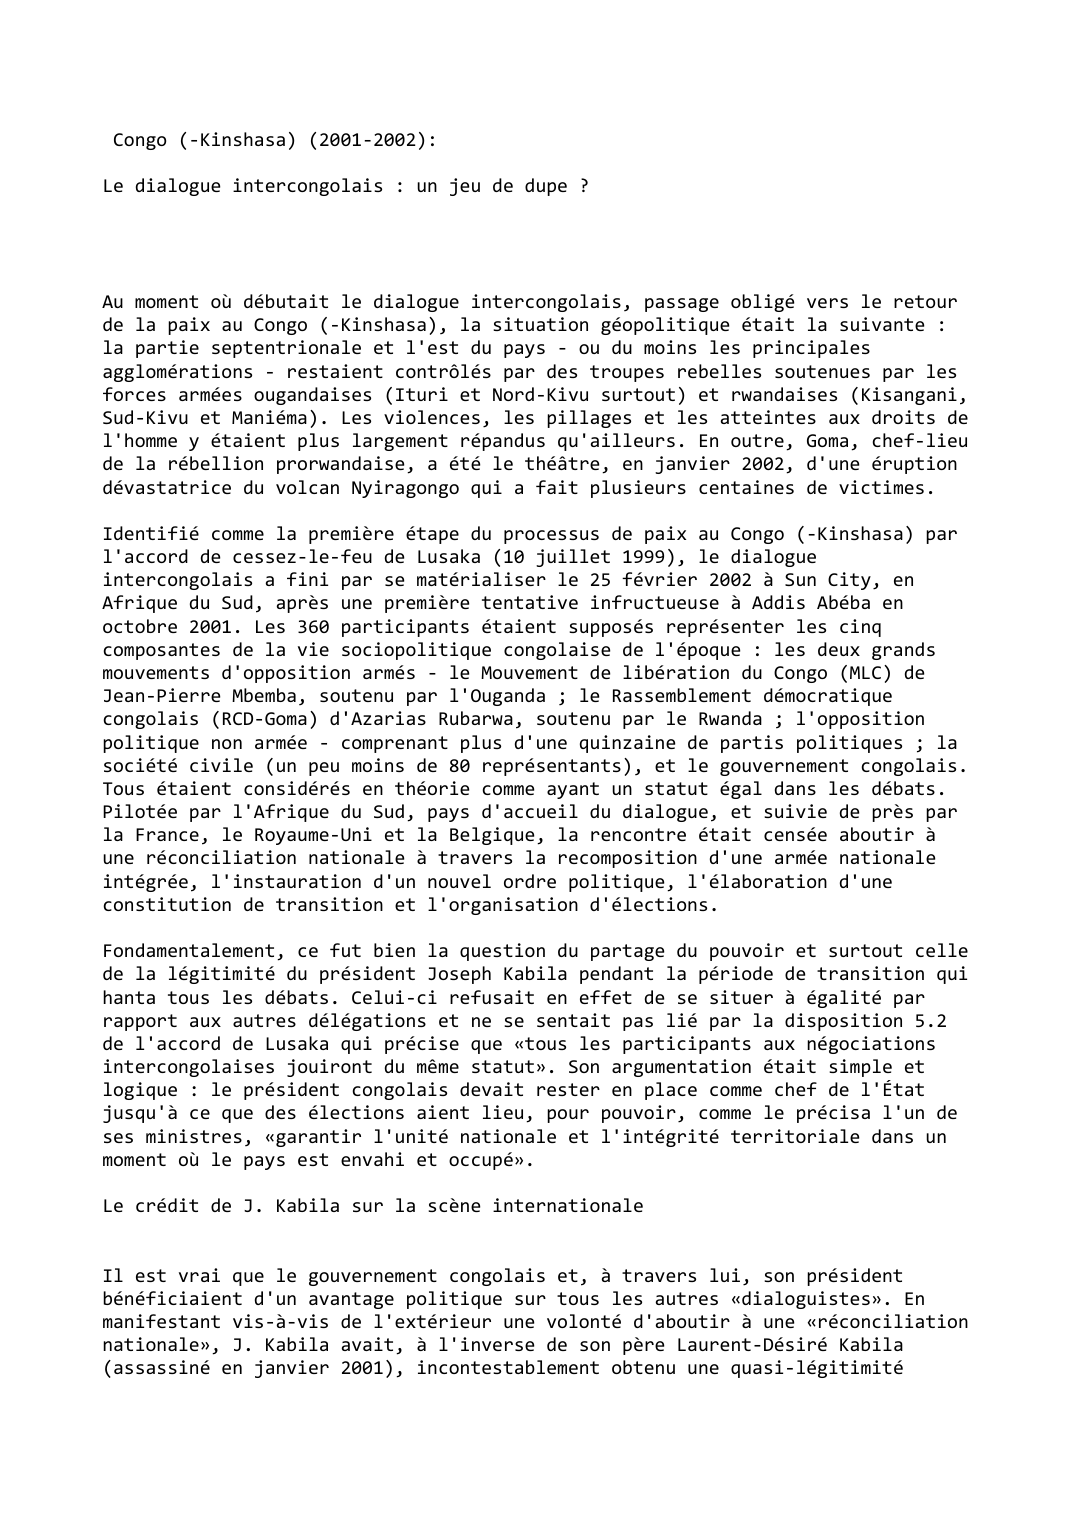 Prévisualisation du document Congo (-Kinshasa) (2001-2002):

Le dialogue intercongolais : un jeu de dupe ?